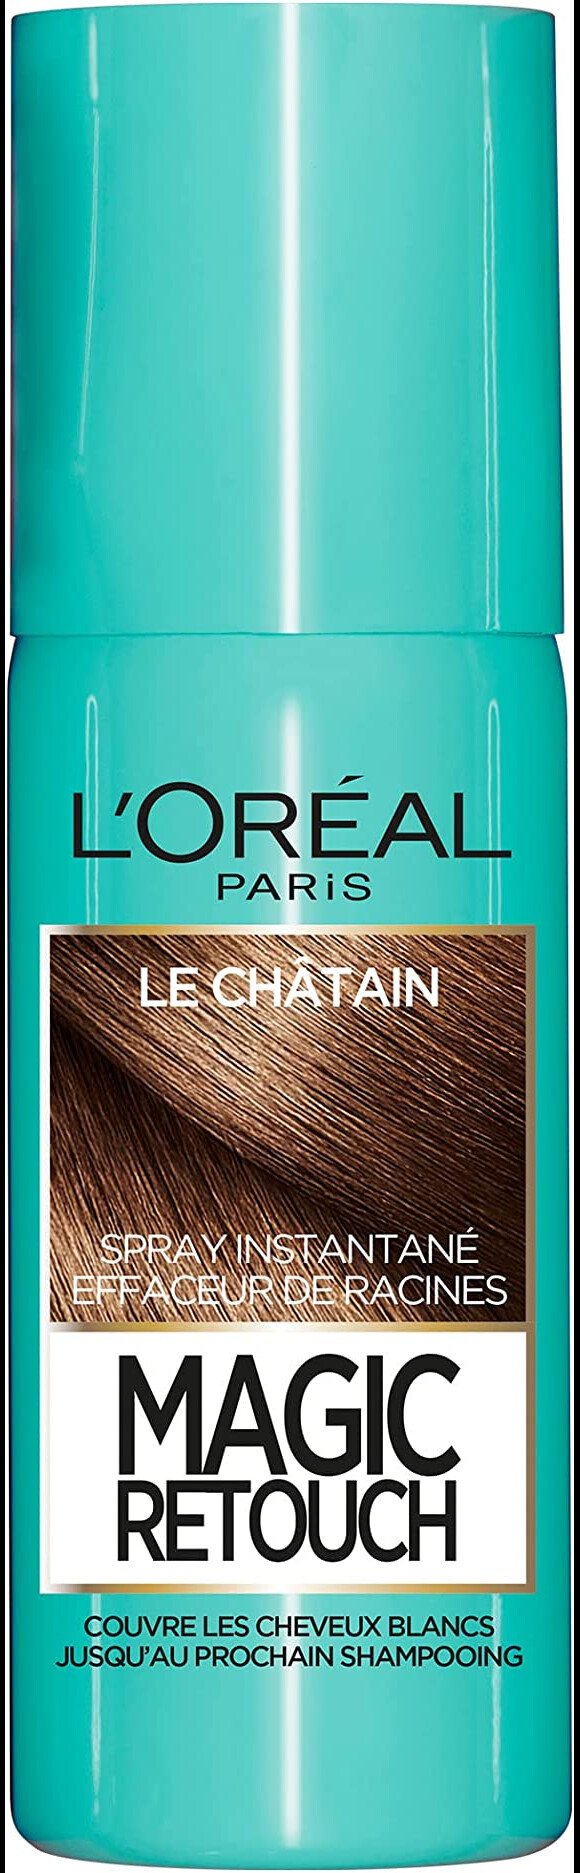 Faites disparaître en quelques secondes vos racines avec ce spray instantané correcteur racines et cheveux blancs L'Oréal Paris